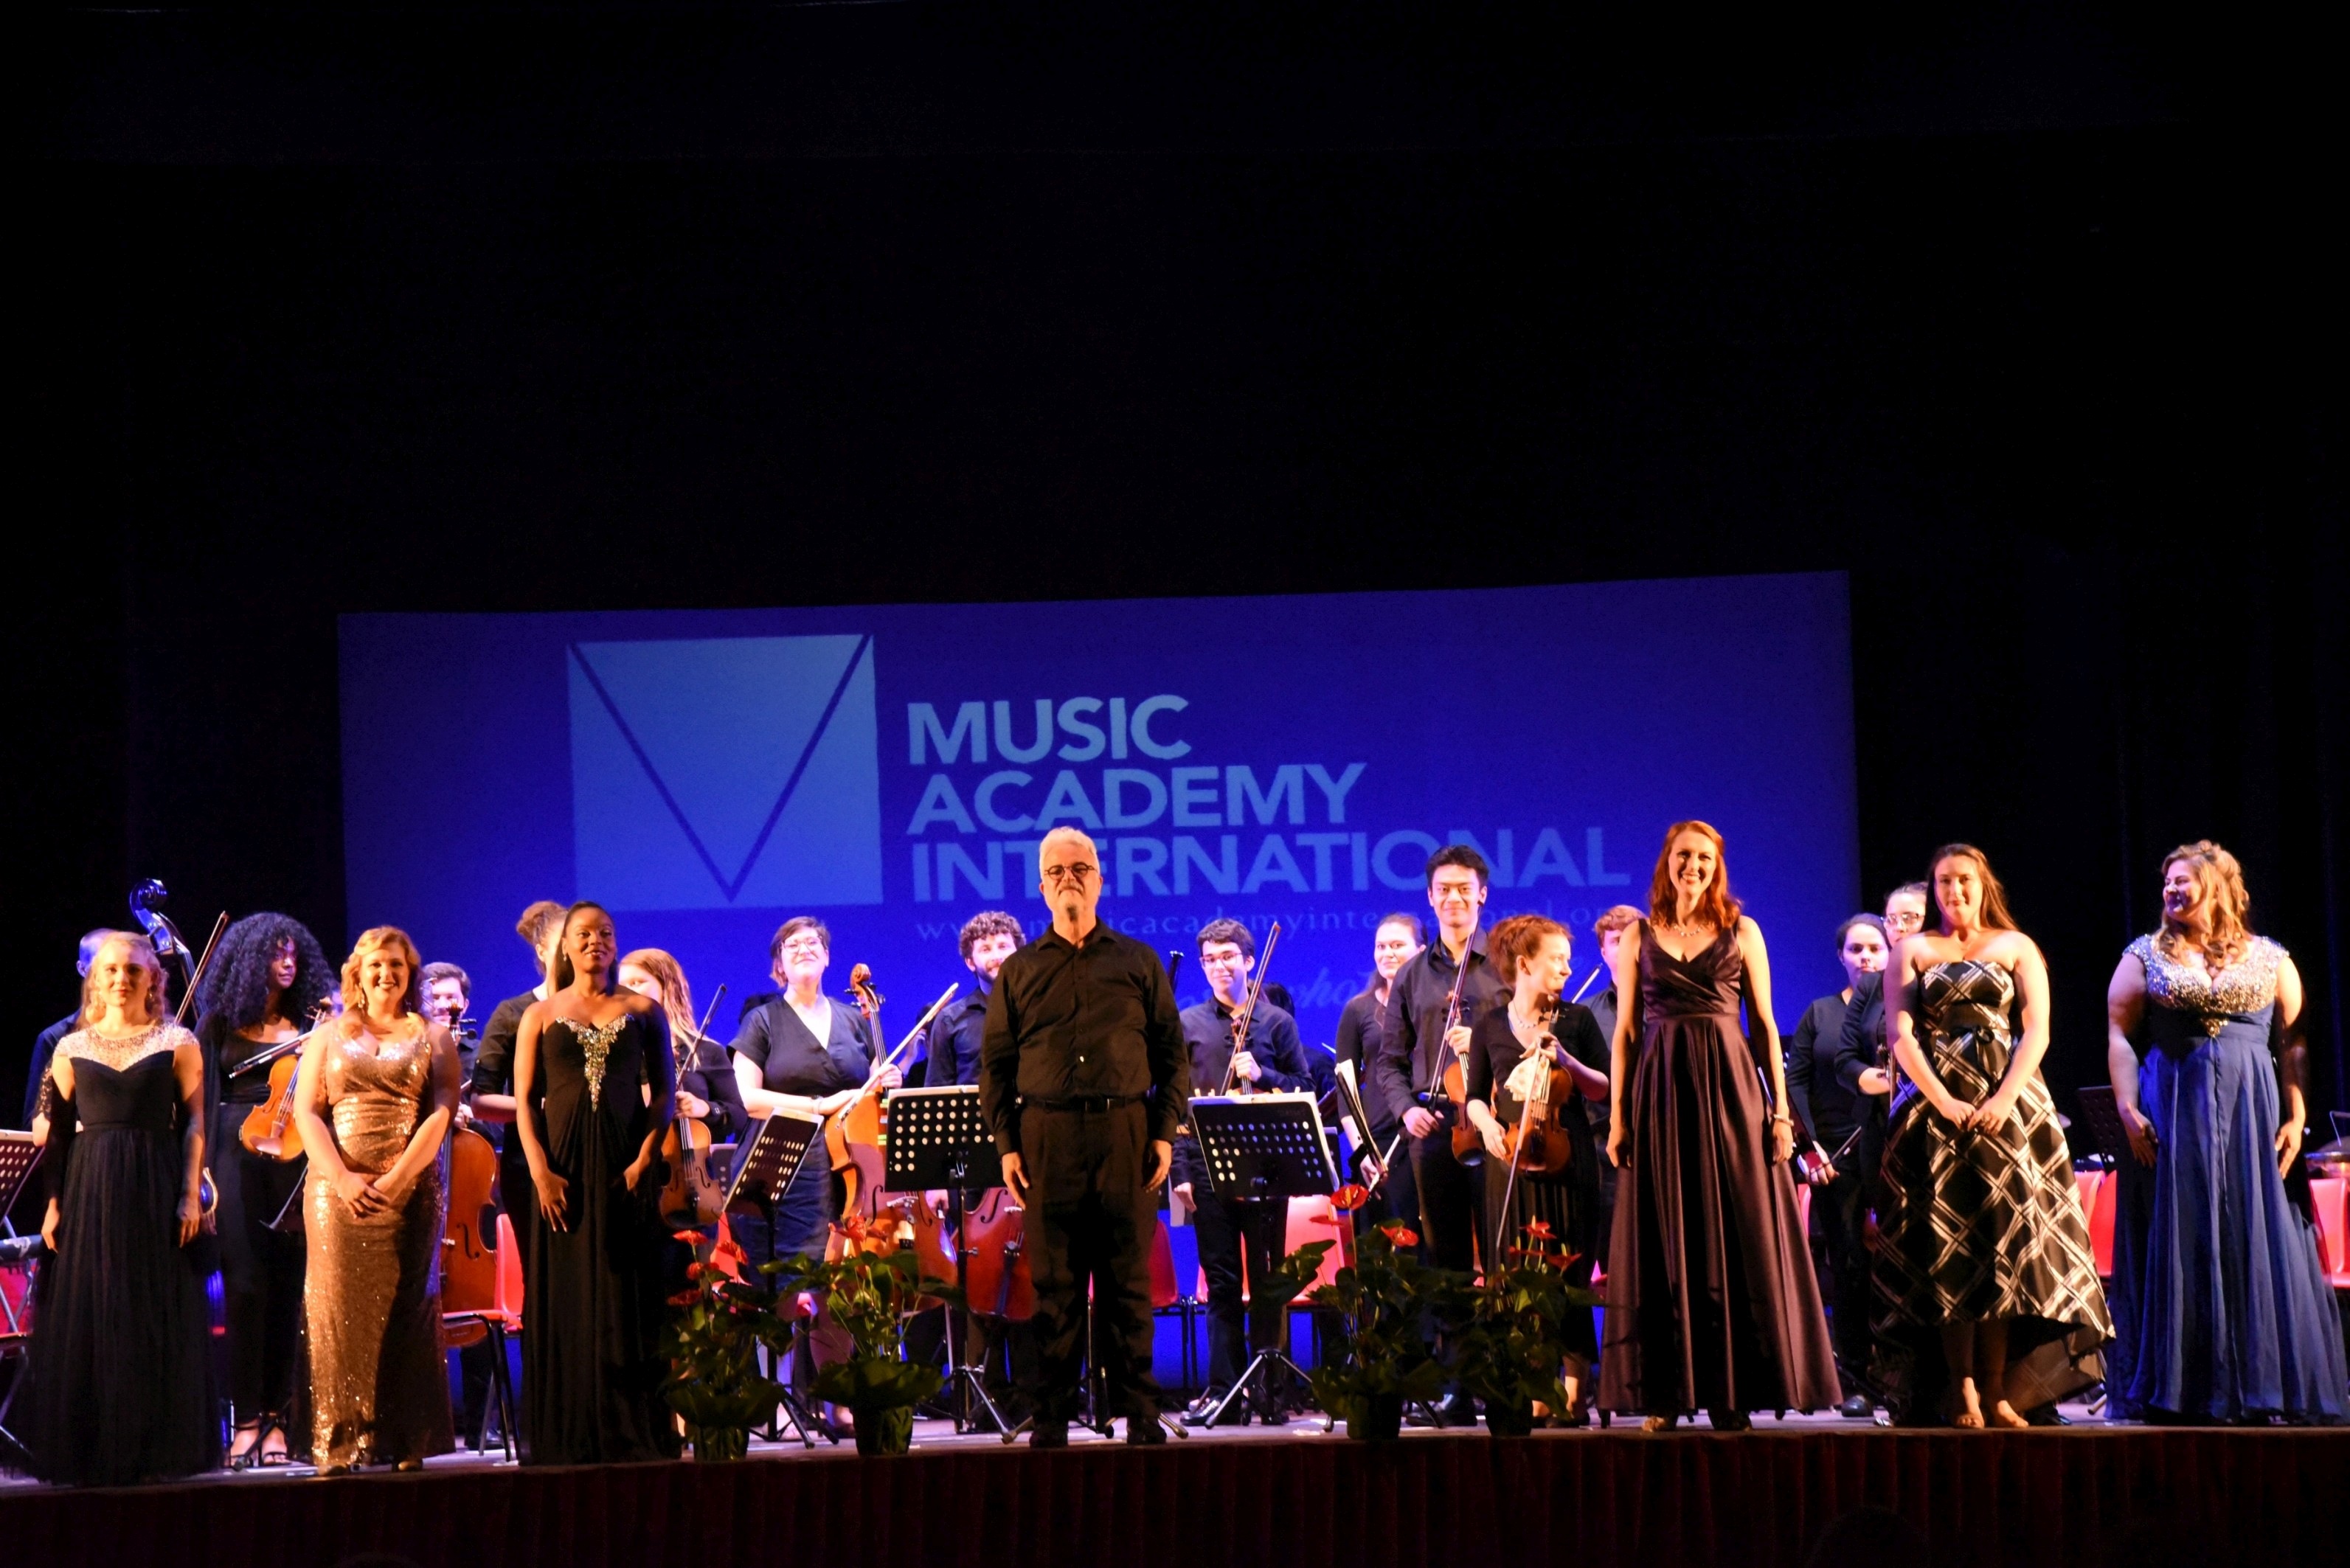 Torna nel 2022 il Trentino Music Festival per Mezzano Romantica in collaborazione con la Music Academy di New York